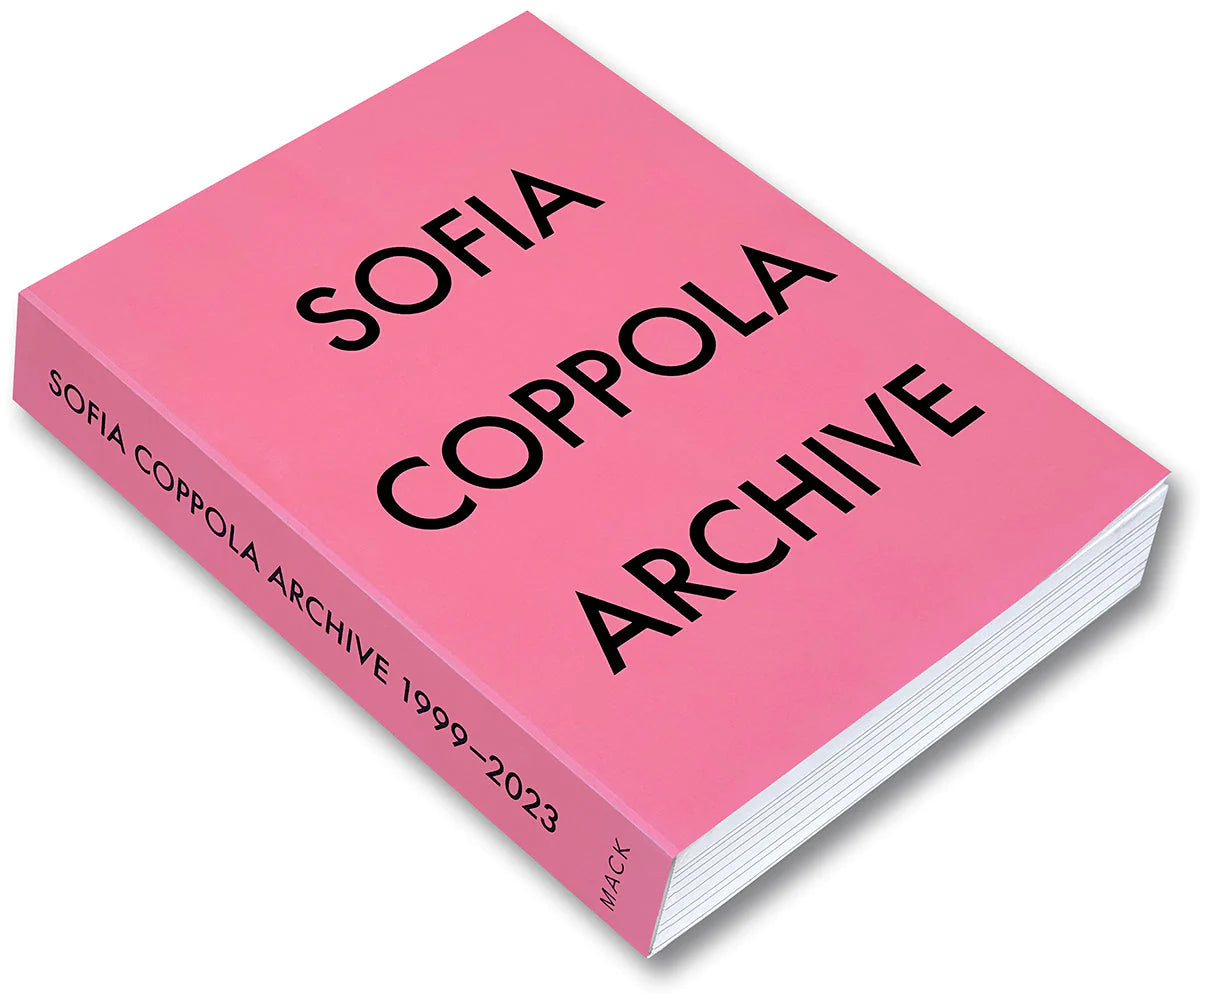 Sofia Coppola - Archive - Printed Matter